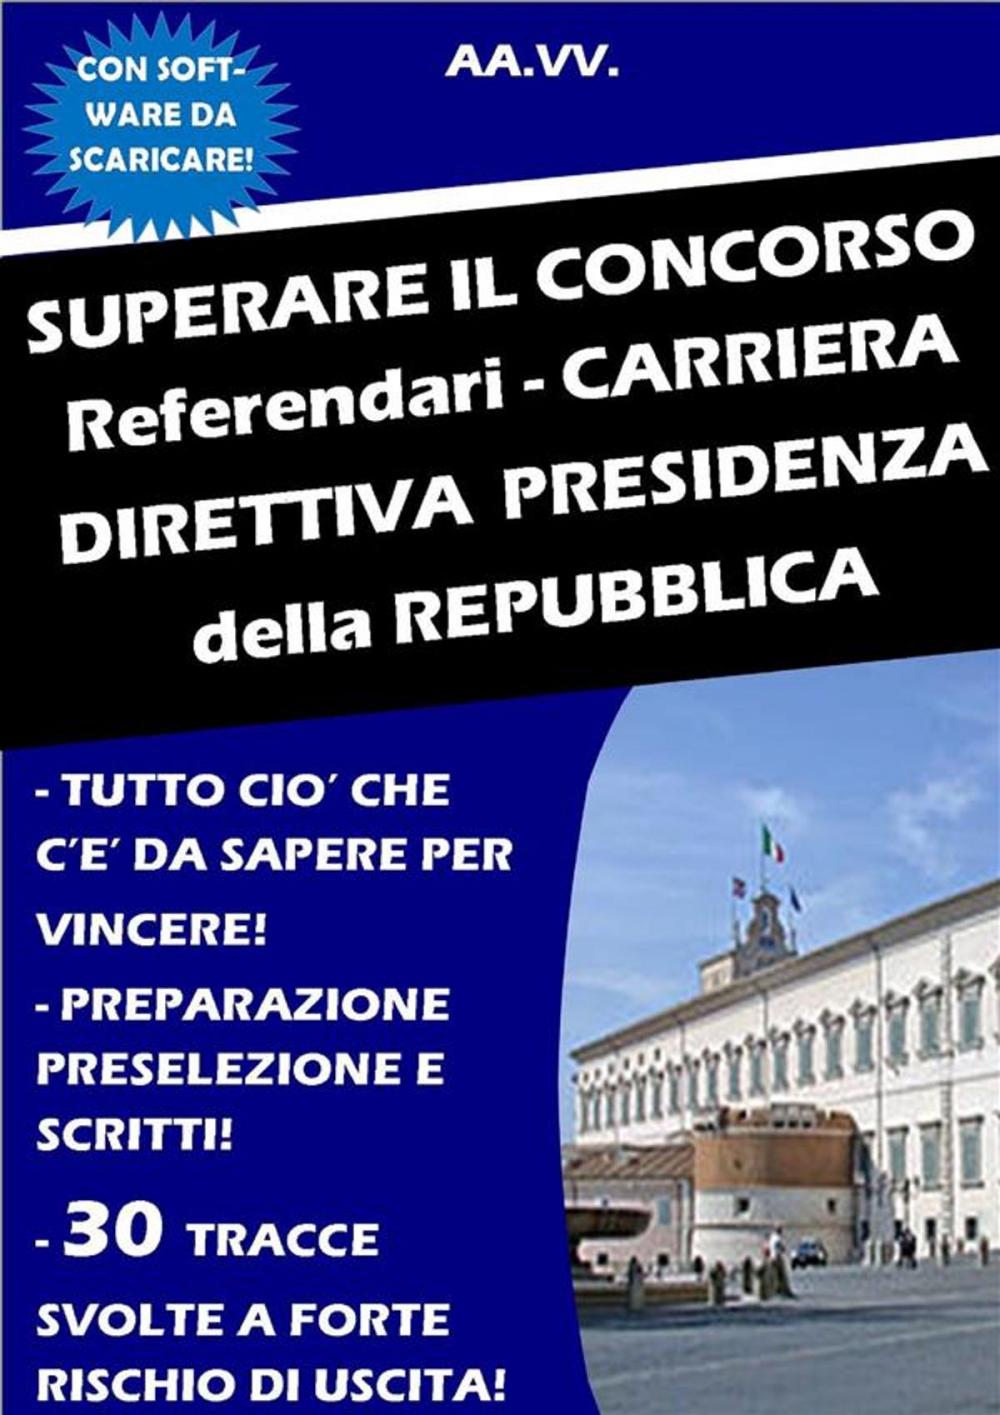 Big bigCover of SUPERARE IL CONCORSO Referendari - Carriera Direttiva PRESIDENZA DELLA REPUBBLICA